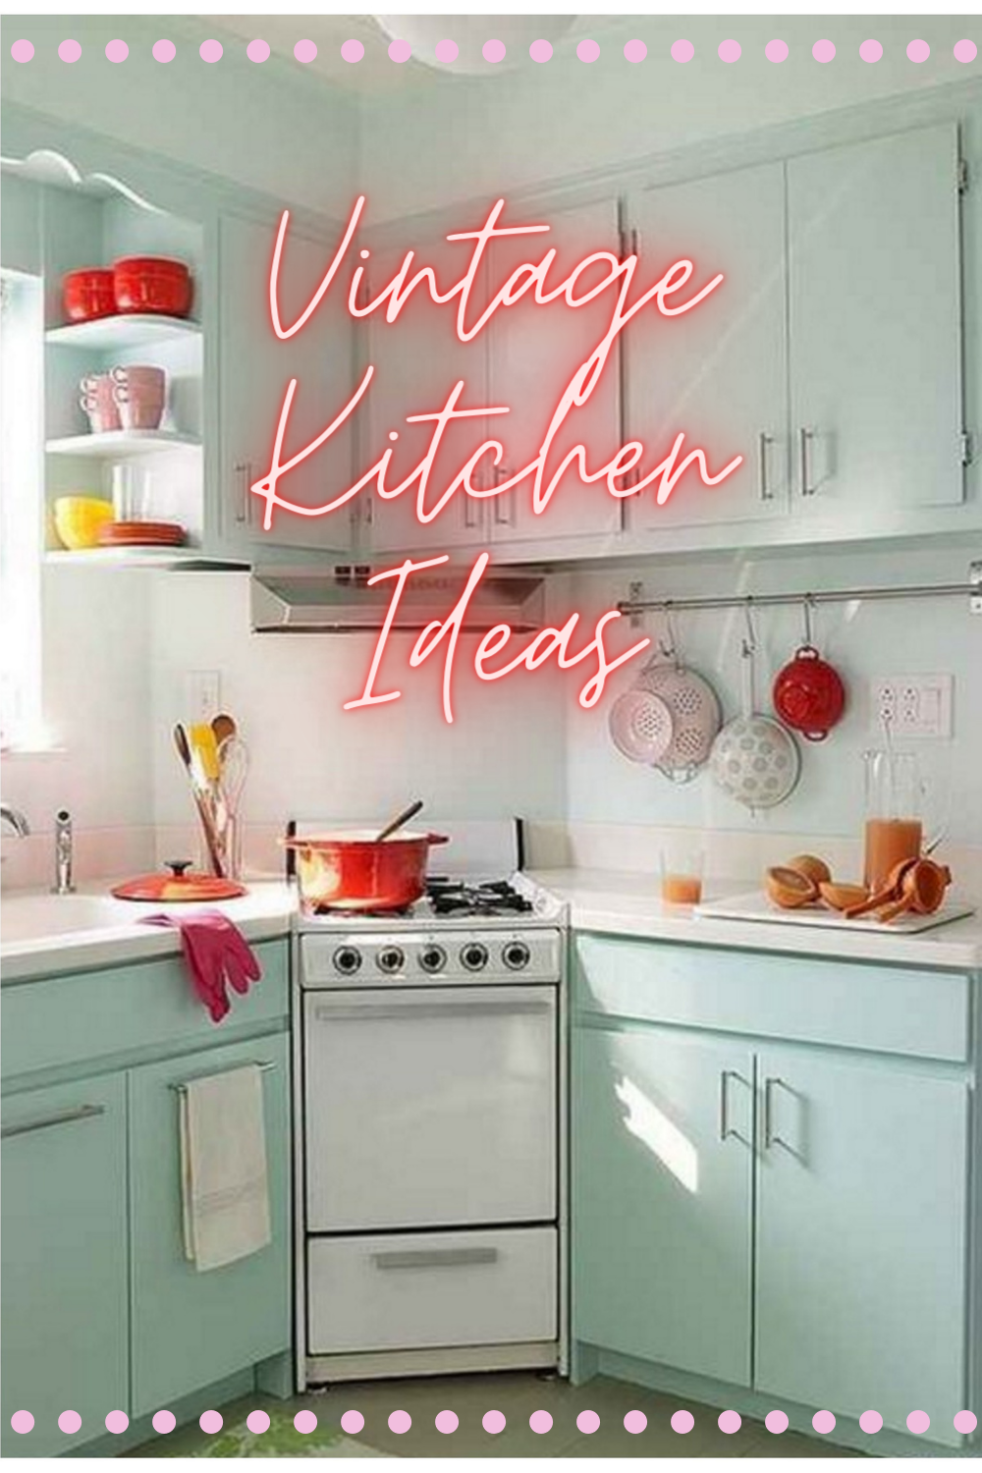 50s Vintage Kitchen Accessories : retro kitchen appliances